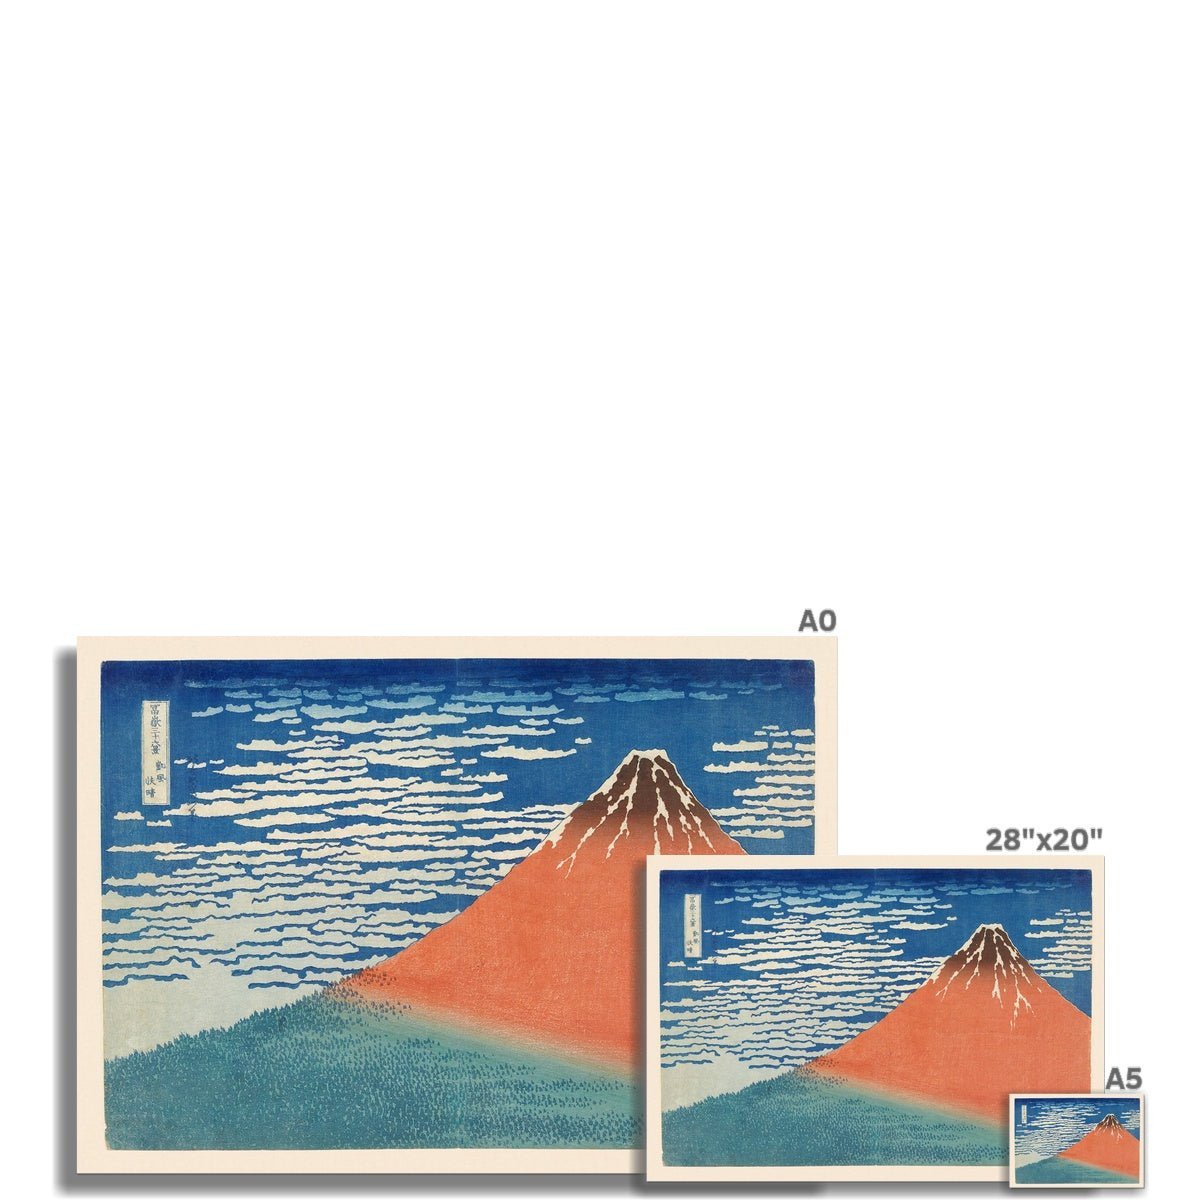 giclee A5 Landscape South Wind, Clear Sky (Katsushika Hokusai) Ukiyo-e Giclée Fine Art Print